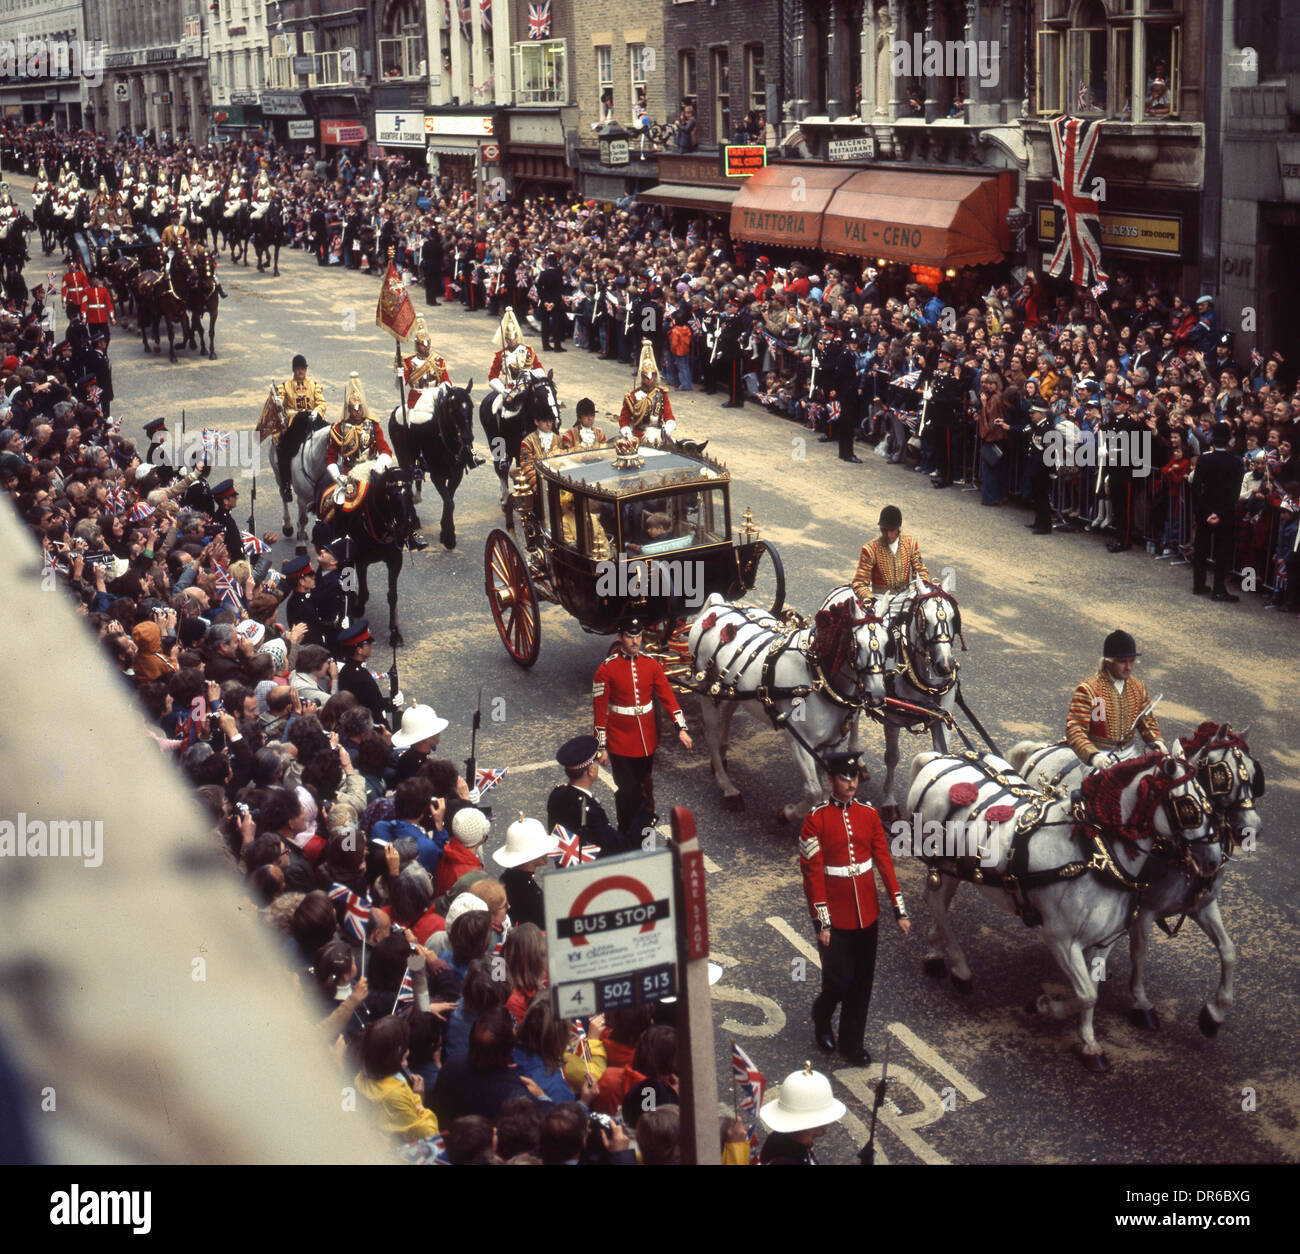 Silberjubiläum von Elisabeth II. Königliche Prozession Fleet Street London 7. Juni 1977. Bild von DAVID BAGNALL Stockfoto